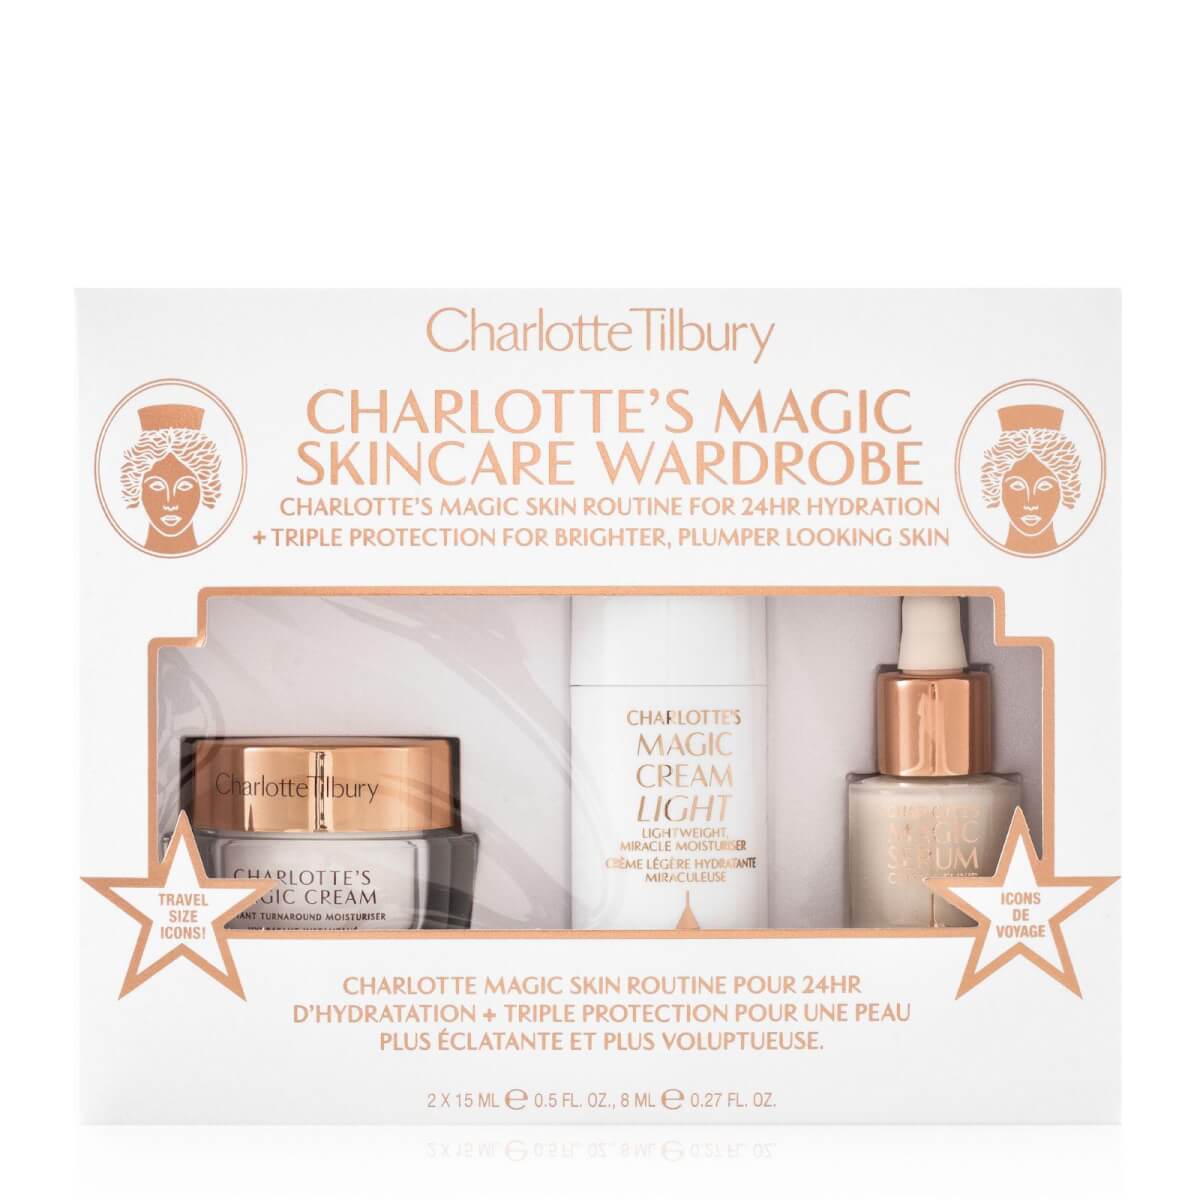 Charlotte Tilbury Charlotte's Magic Skin Wardrobe